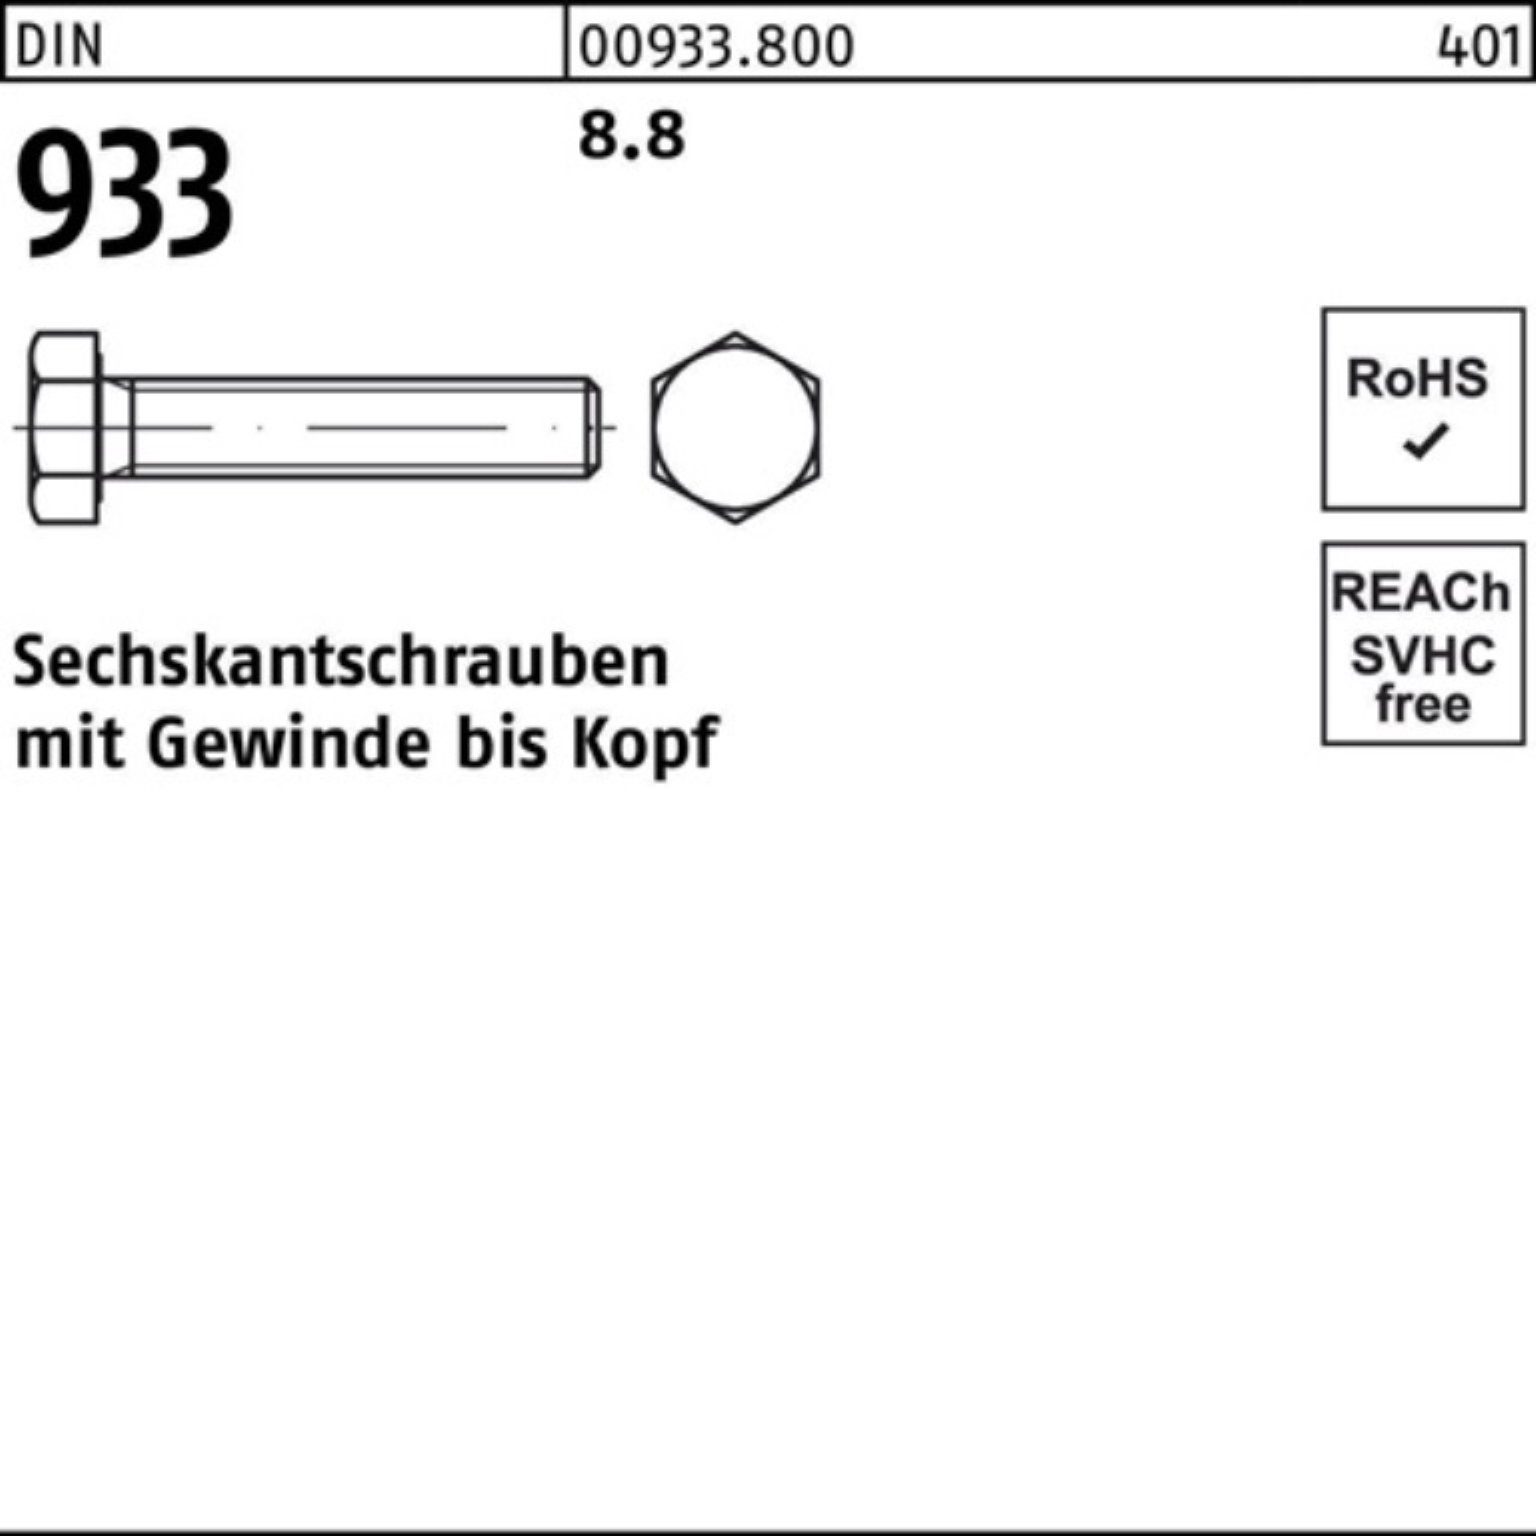 100 Sechskantschraube 933 Pack 55 Stück Reyher M10x DIN VG 933 100er DIN Sechskantschraube 8.8